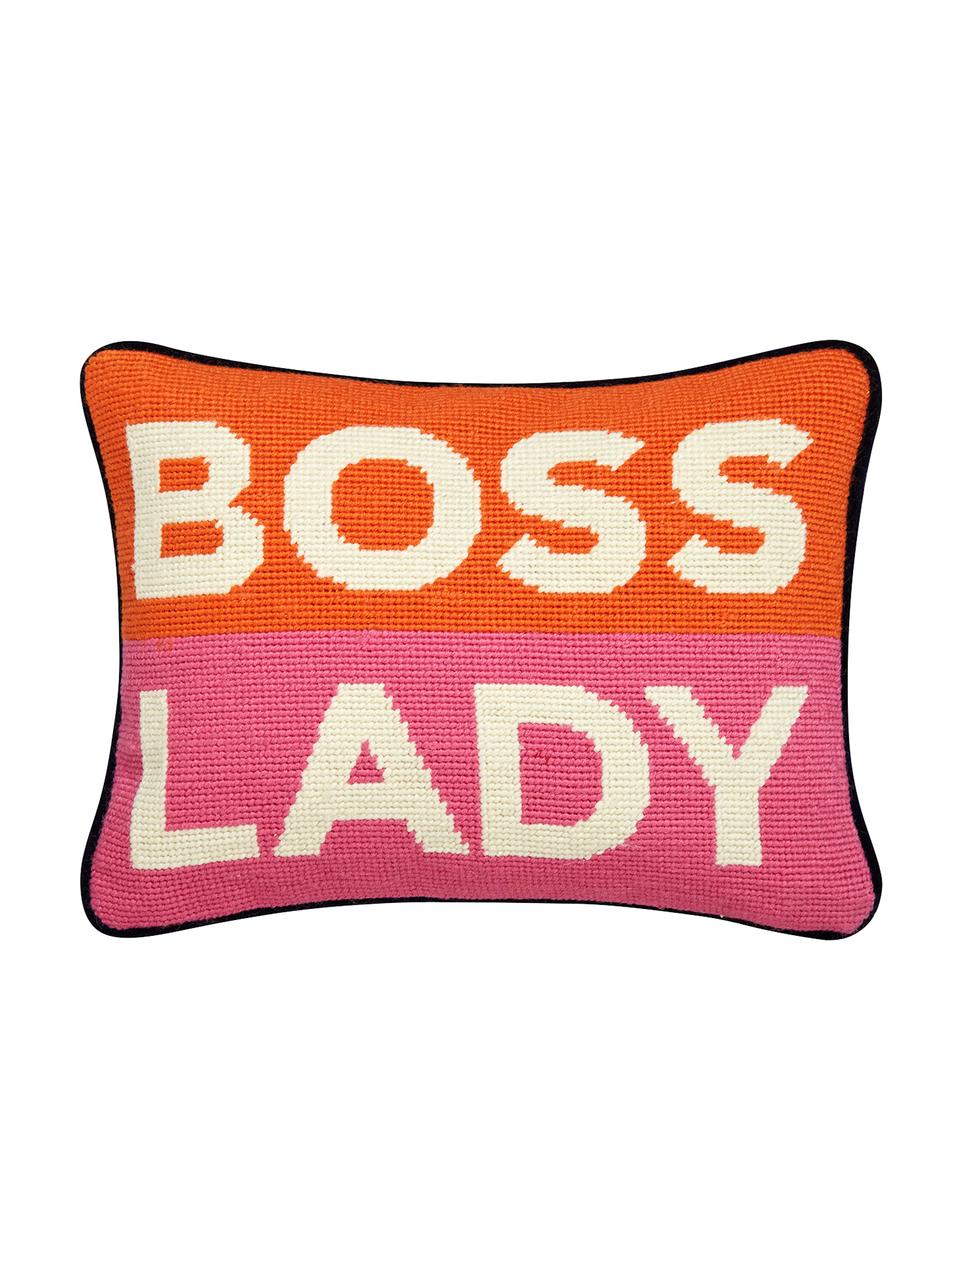 Mała poduszka z wypełnieniem Boss Lady, Pomarańczowy, biały, różowy, marynarski granat, S 23 x D 30 cm